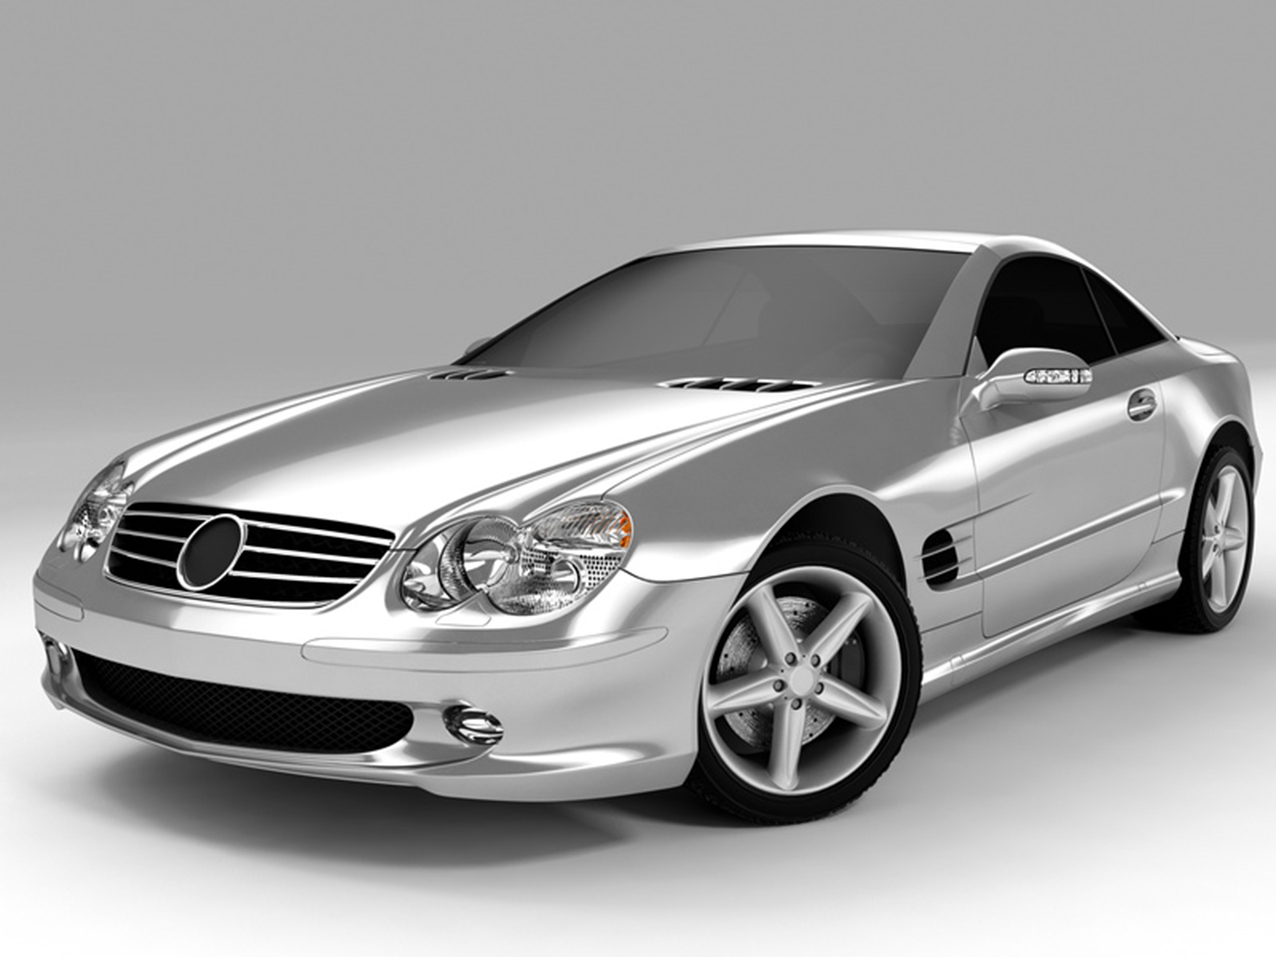 Autofolie-3M Car Wrap-Serie 2080-Chrome Spezial Effekte Folien-Car  Wrapping-Folie-statt-Lack-Vollverklebung-Lackfolie-Klebefolie-Schutzfolie-billig-und-gut-kaufen, Shop für alle Werbe Produkte von A - Z